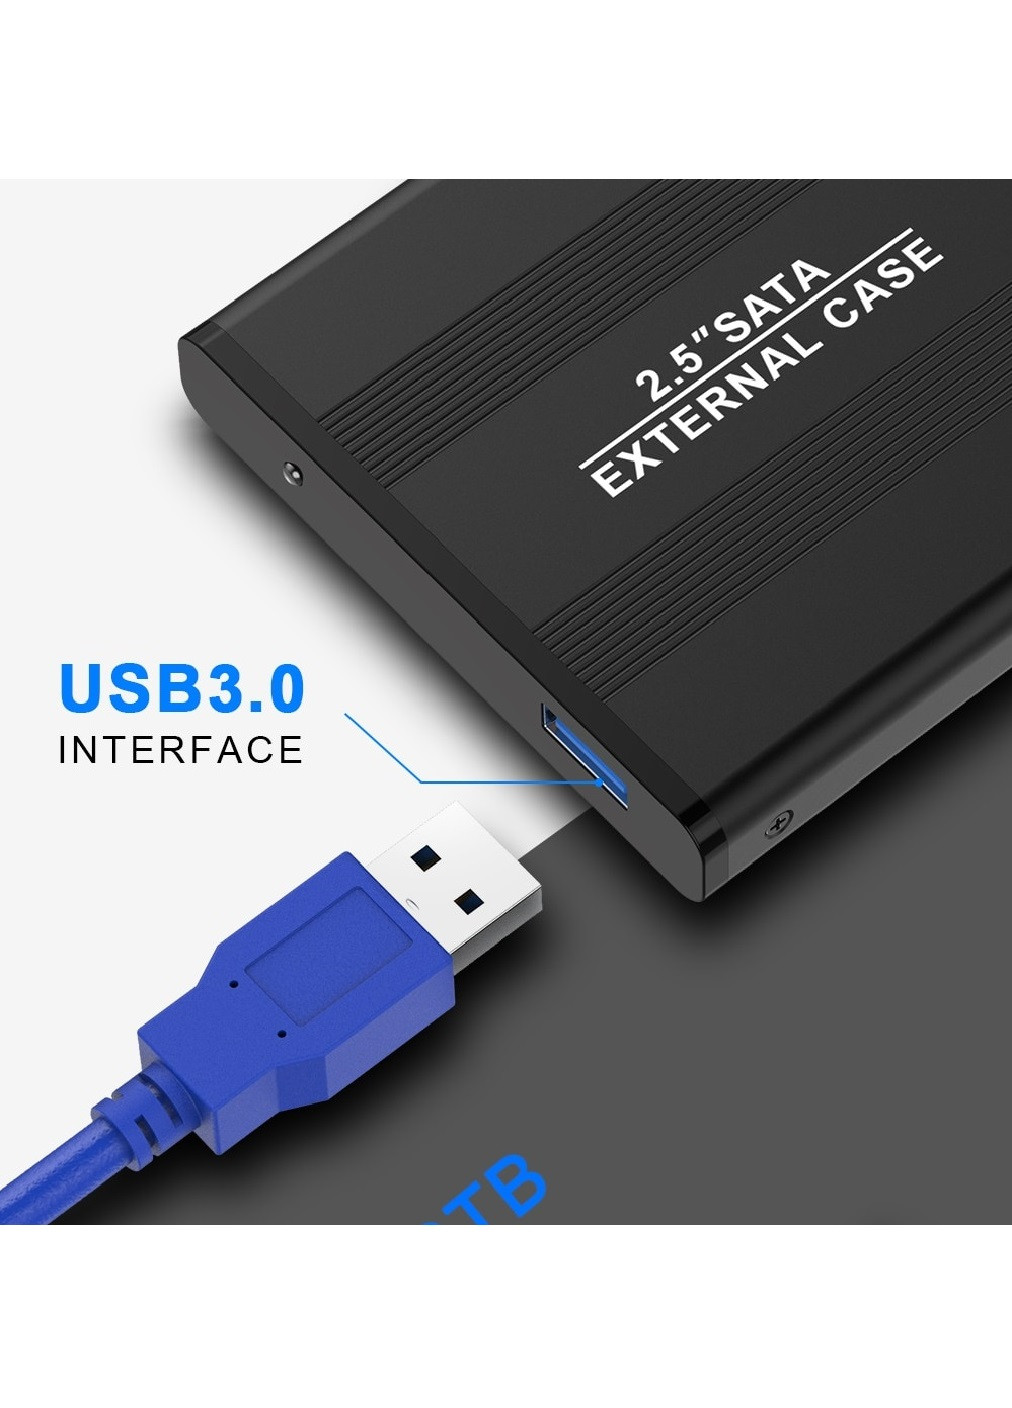 Зовнішня кишеня адаптер перехідник для USB 3.0 для SSD/HDD диска SATA III 2.5” 127x75x13 мм (474505-Prob) Чорний Unbranded (258617383)